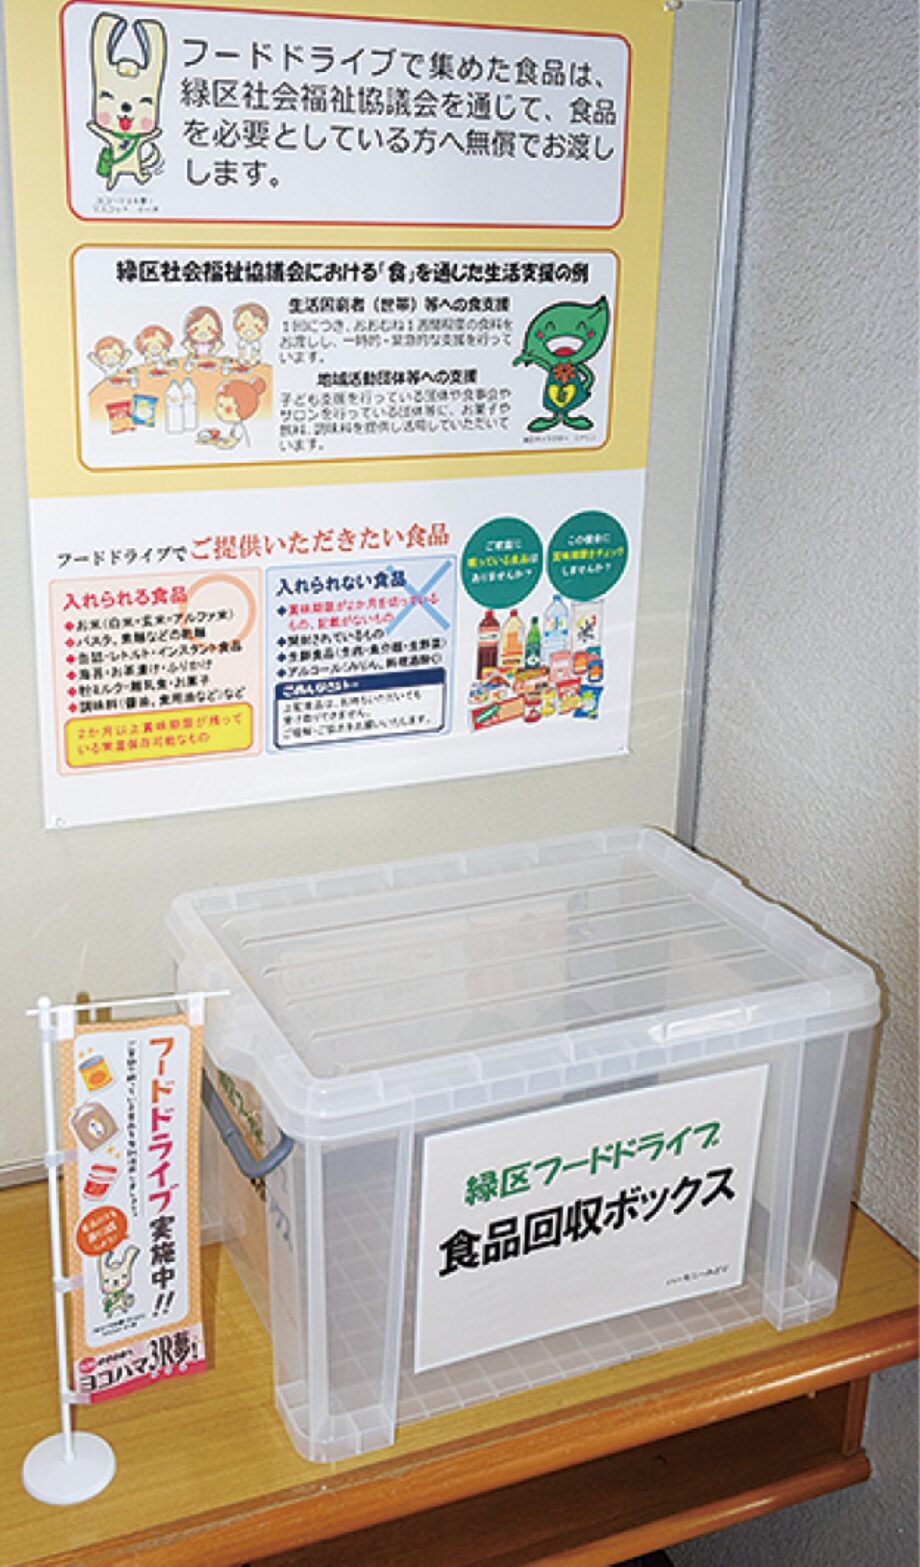 【横浜市緑区】緑区役所をはじめ区内6か所に食品回収ボックス常設へ フードドライブ